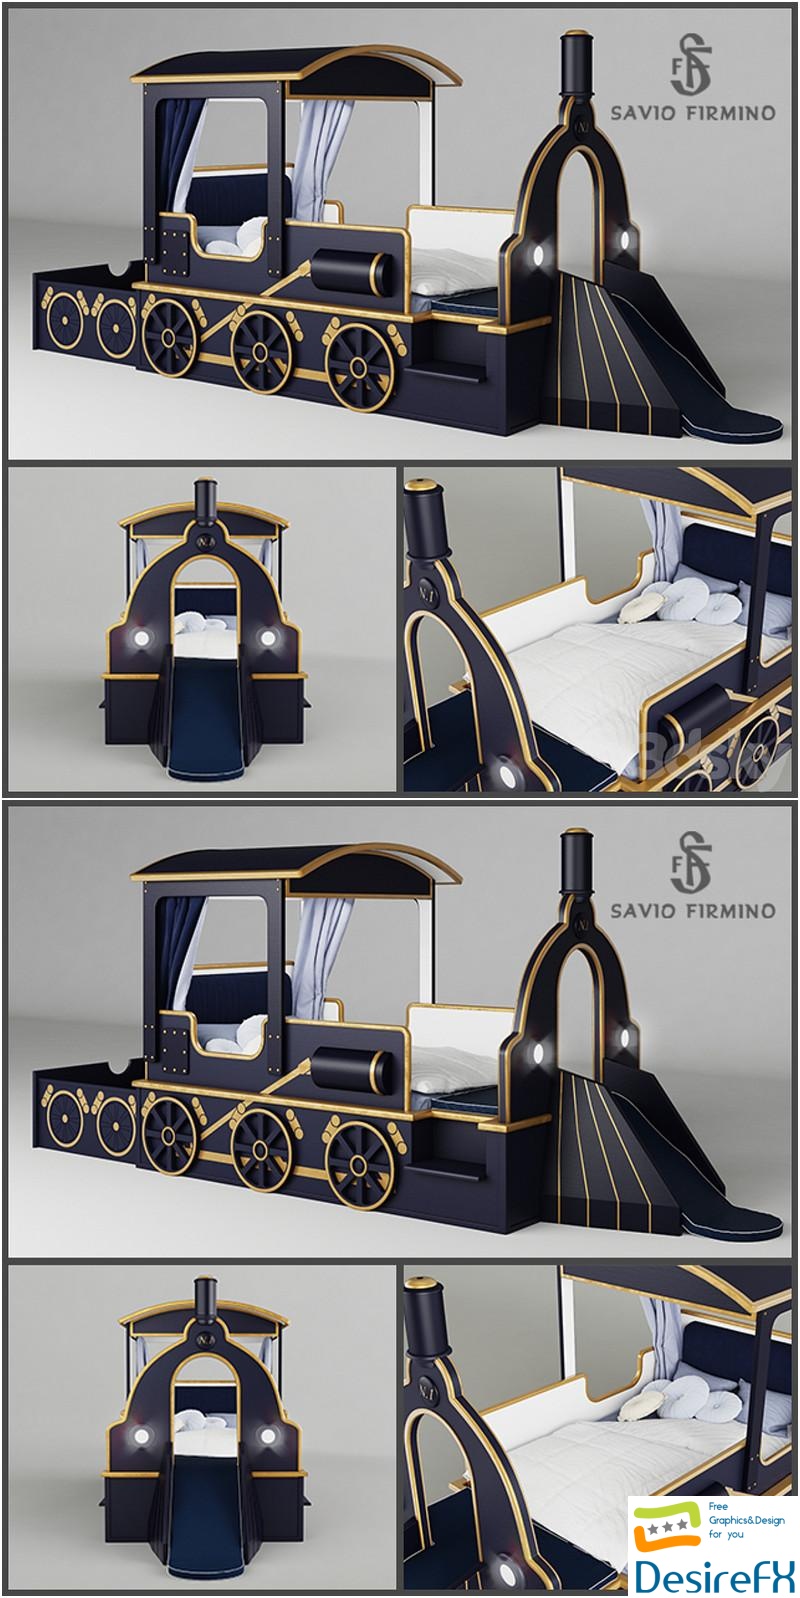 Savio Firmino Kid's Bed "Train" 3D Model